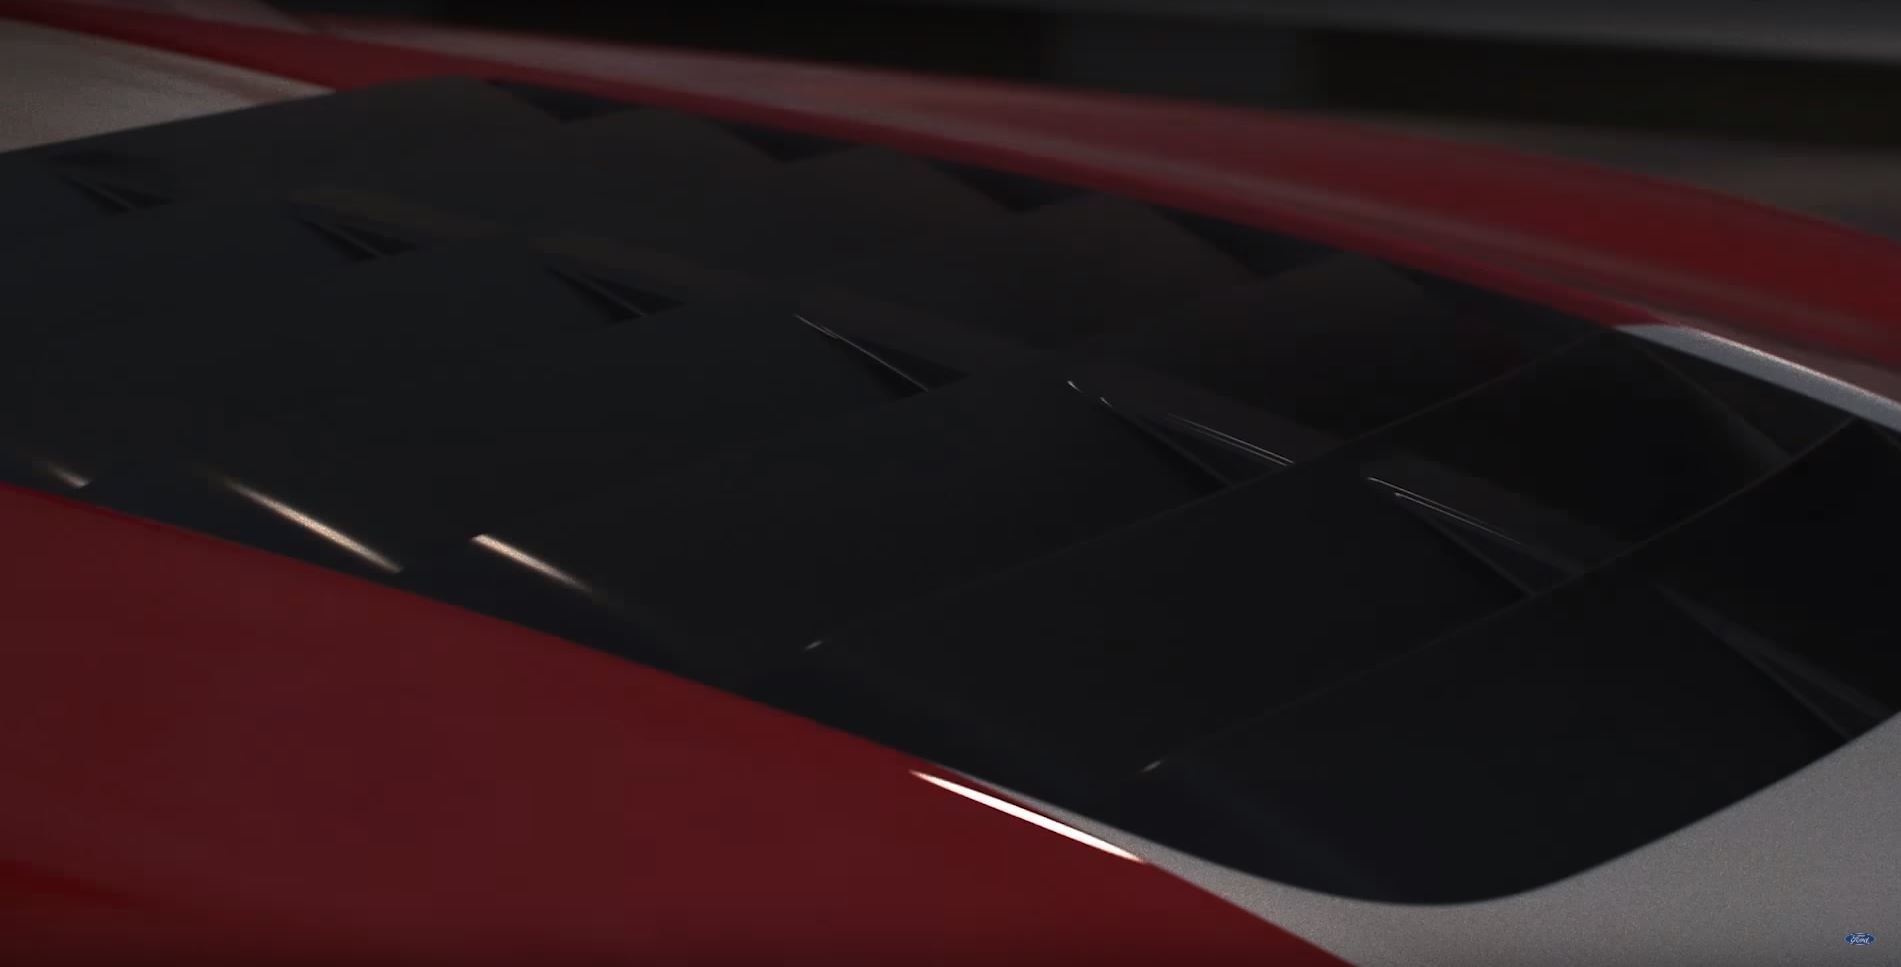 Snímky z videa, na kterém se nový Shelby GT500 objevil poprvé